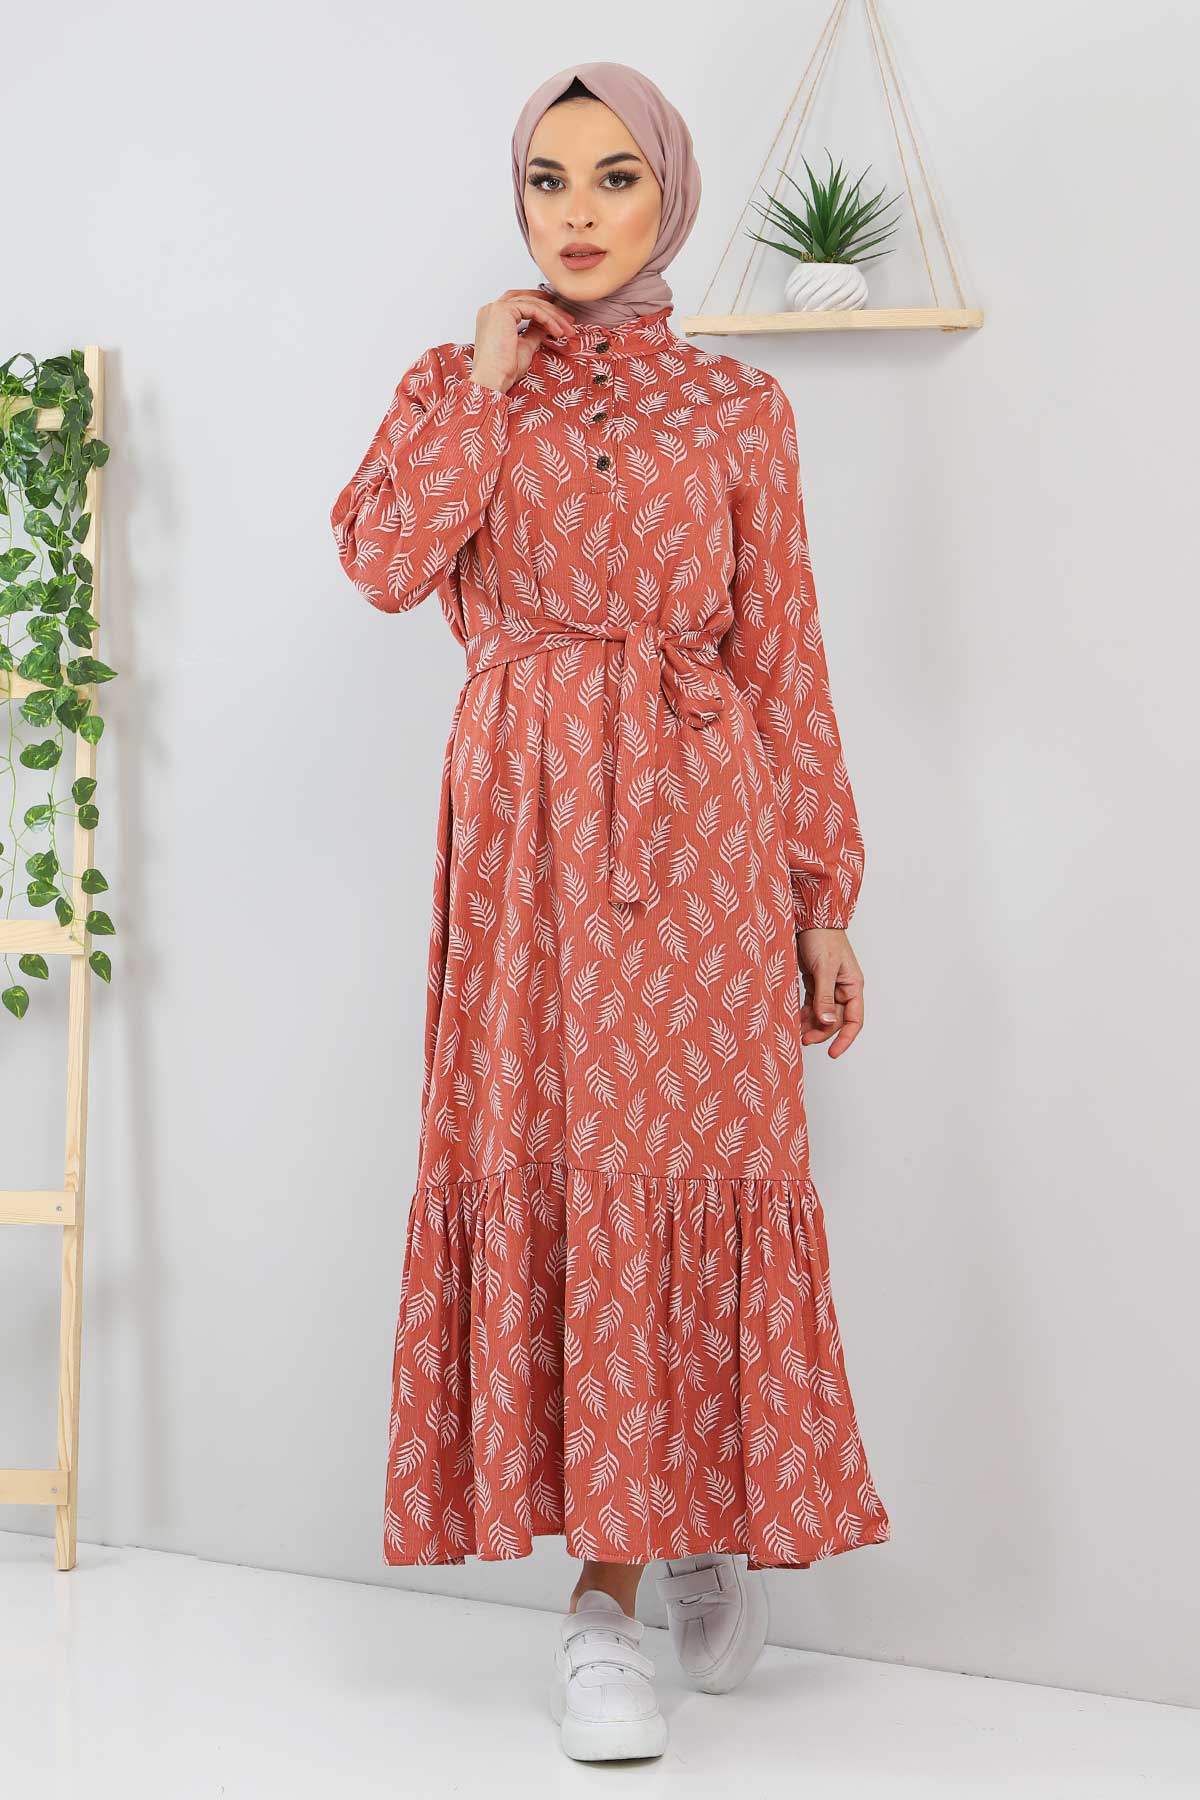 Tesettür Dünyası - Beli Bağlamalı Yaprak Desenli Tesettür Elbise TSD211239 Somon